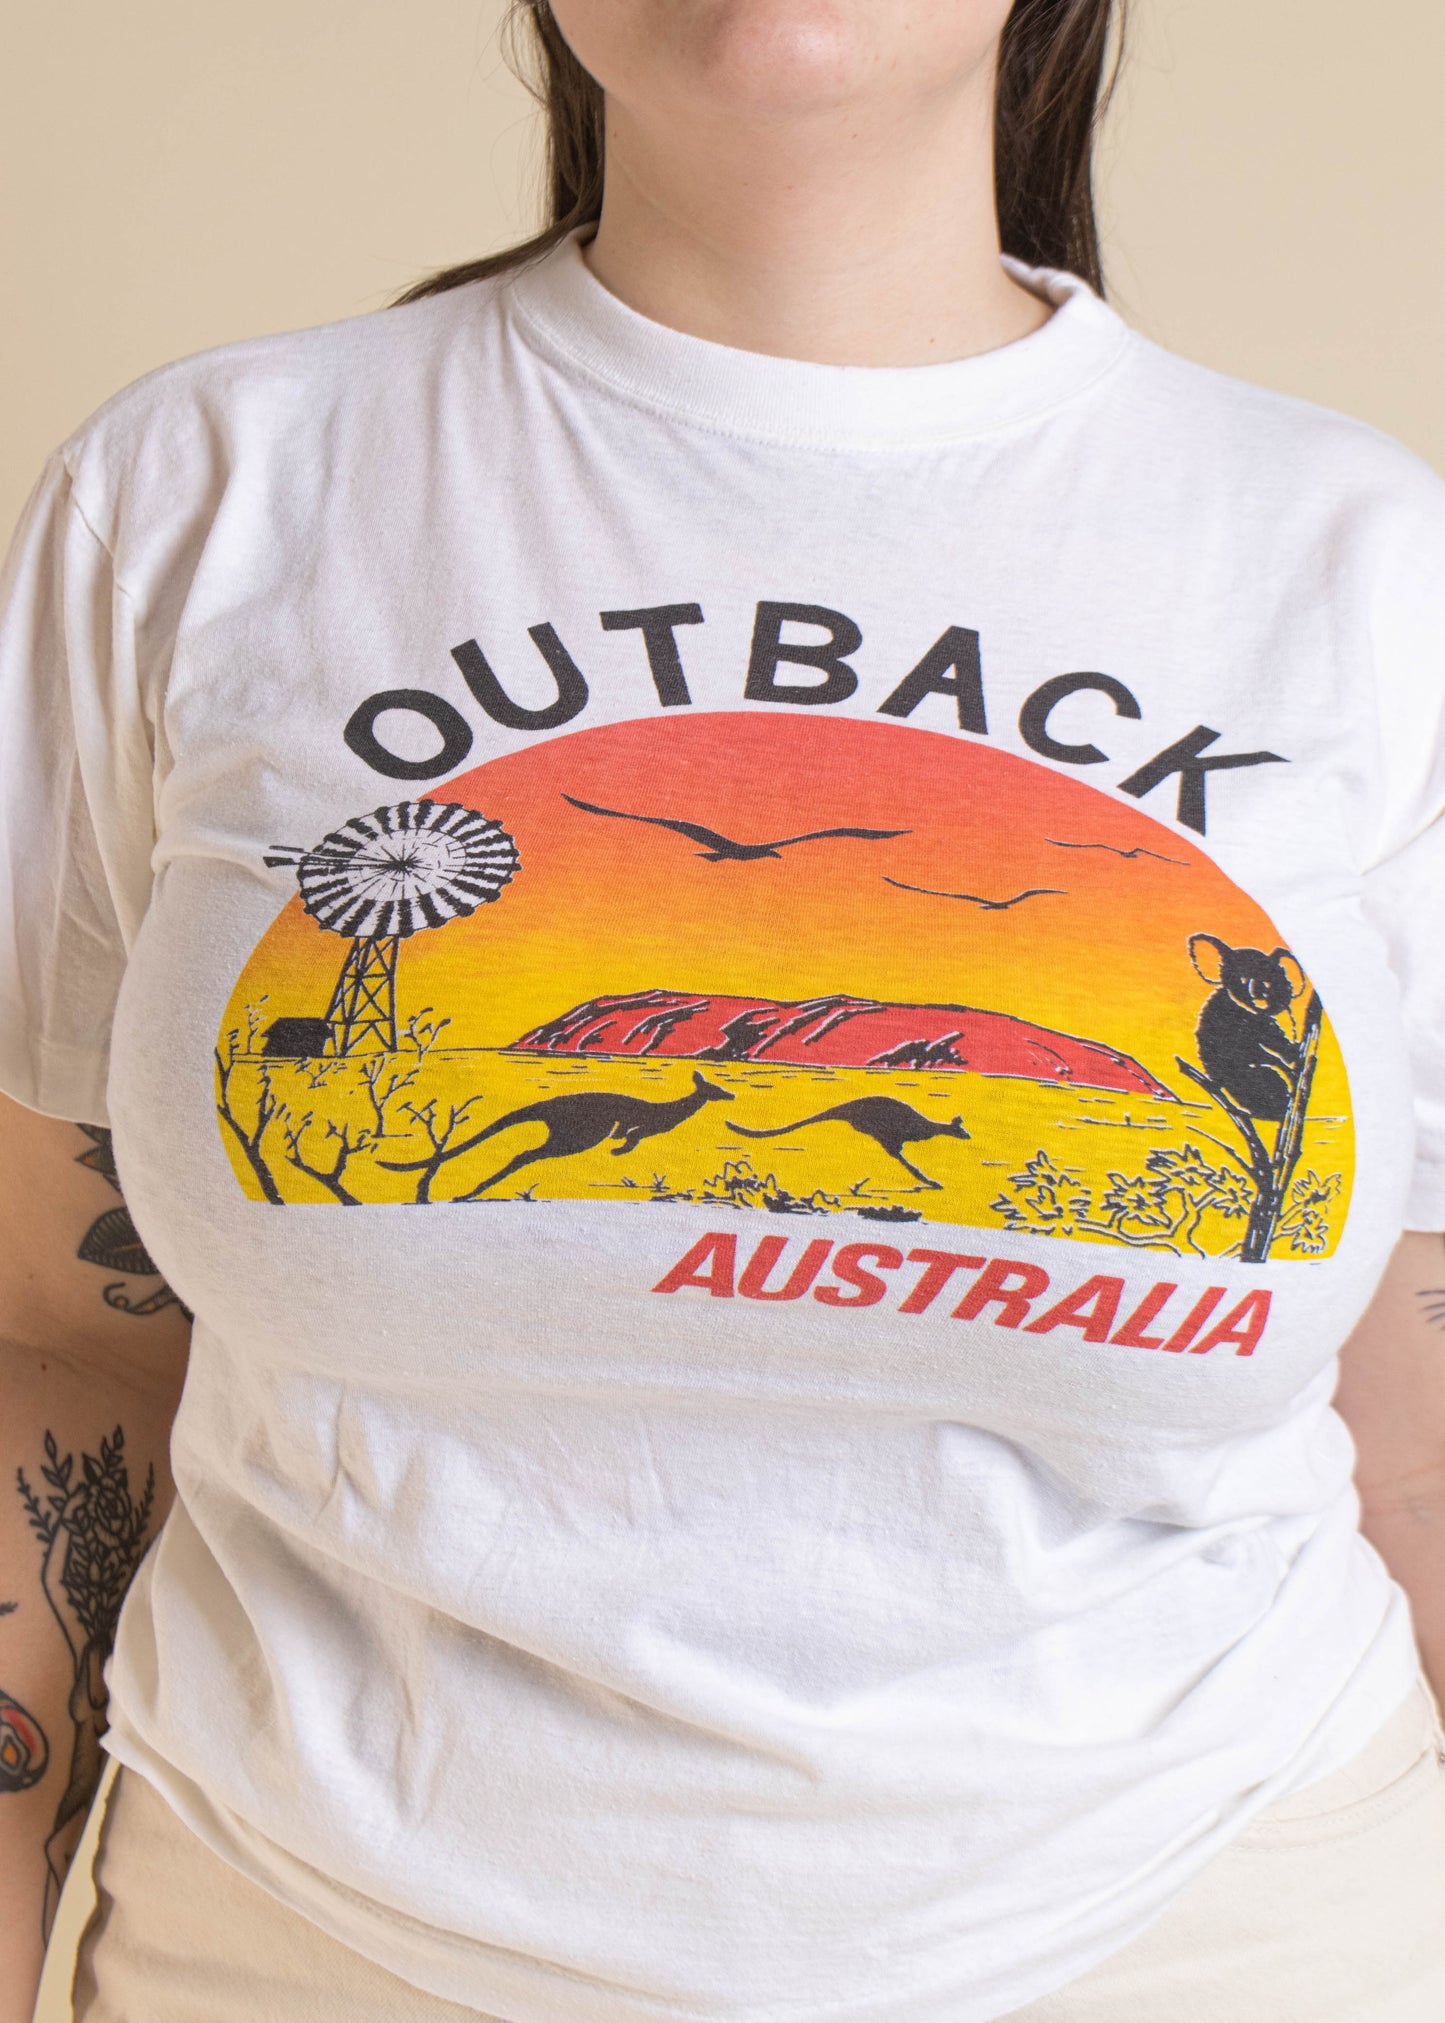 1980s Australia Outback Souvenir T-Shirt Size M/L